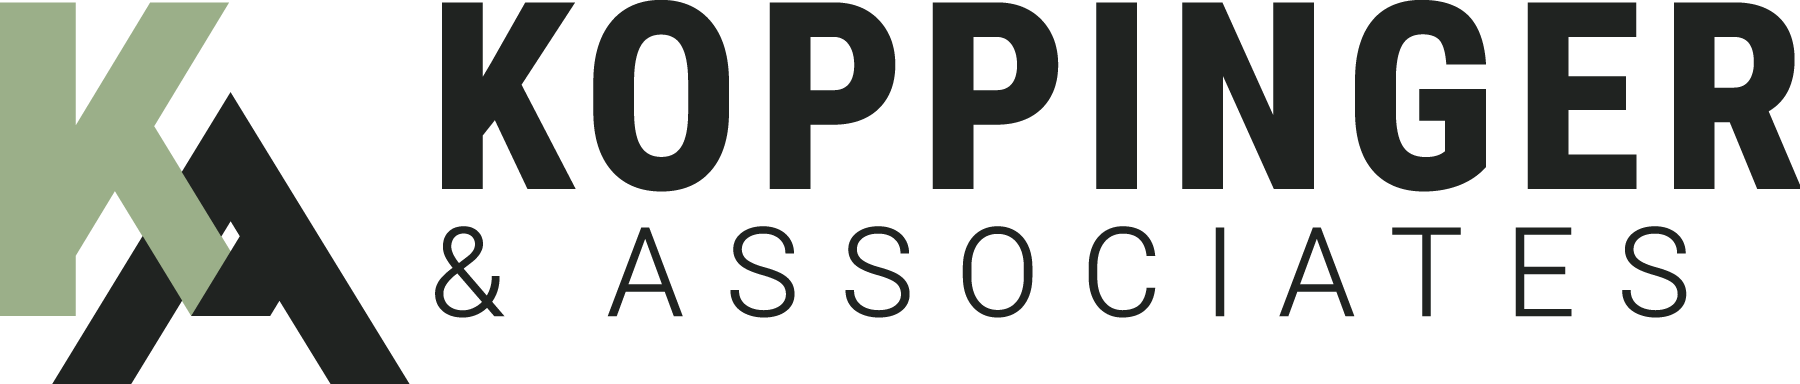 Koppinger &  Associates logo